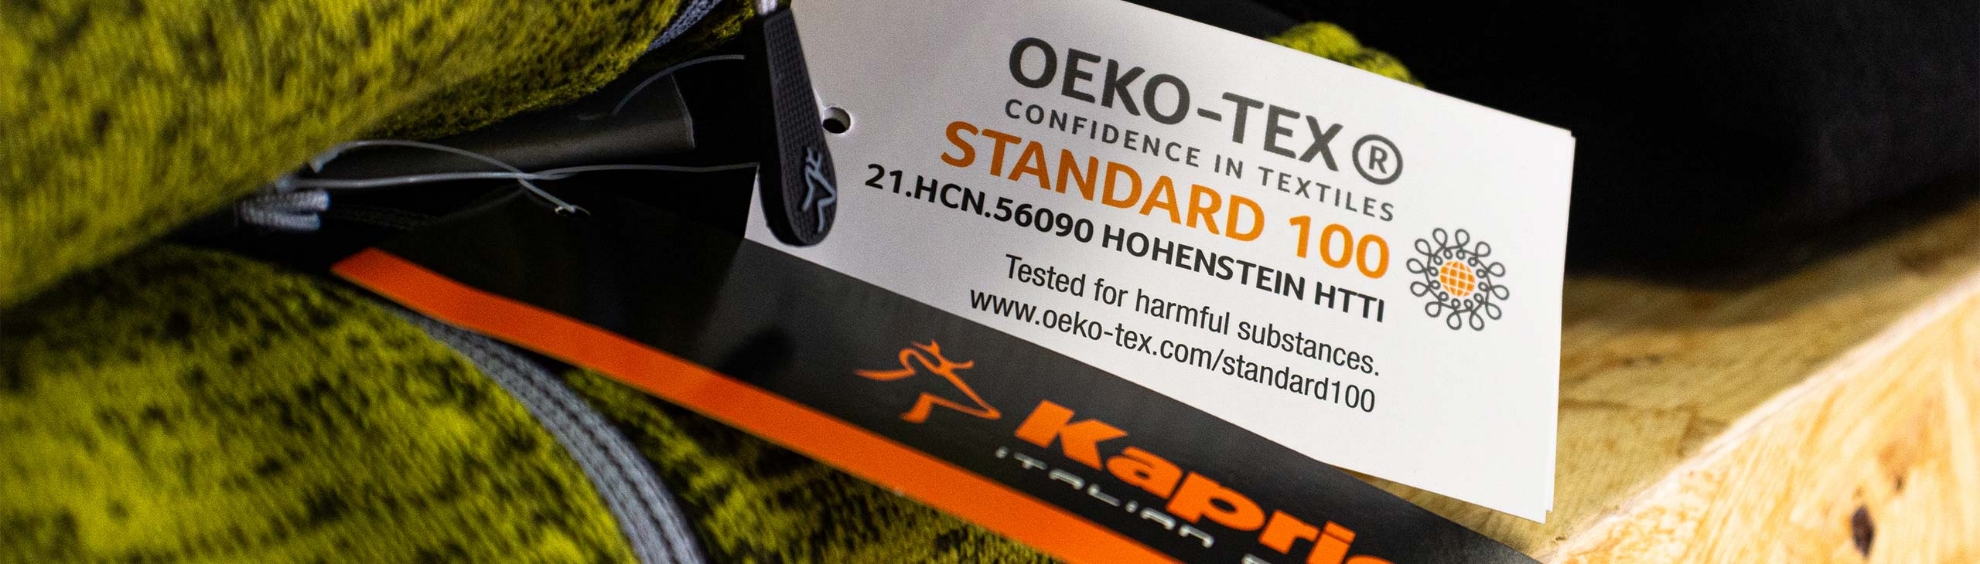 OEKO-TEX: una señal de seguridad en la ropa Kapriol